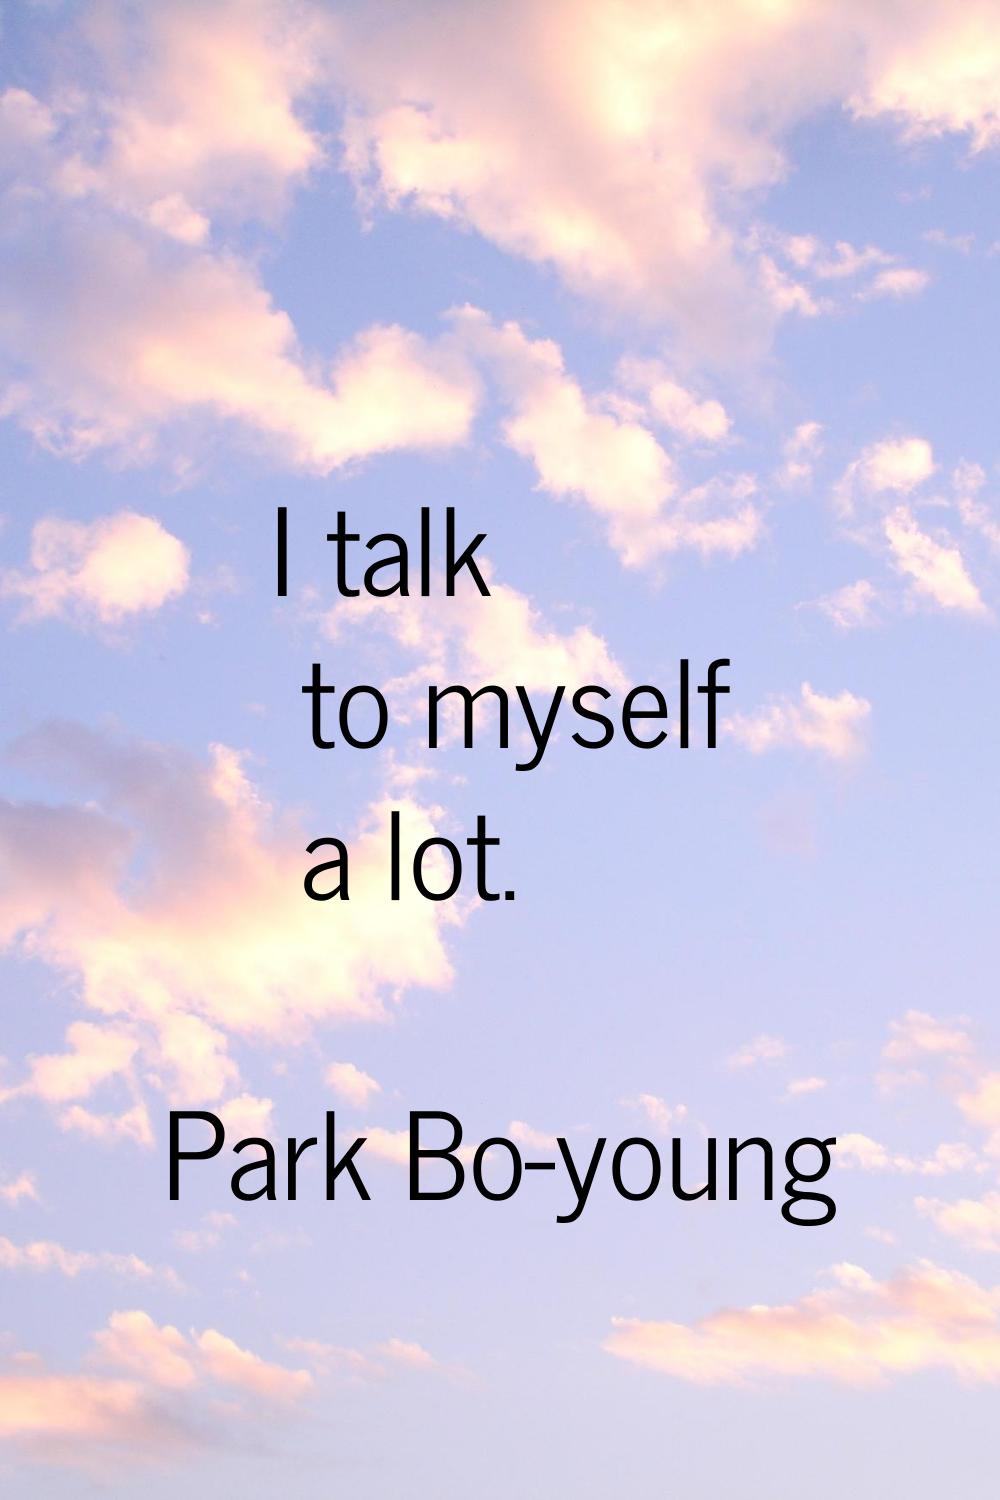 I talk to myself a lot.